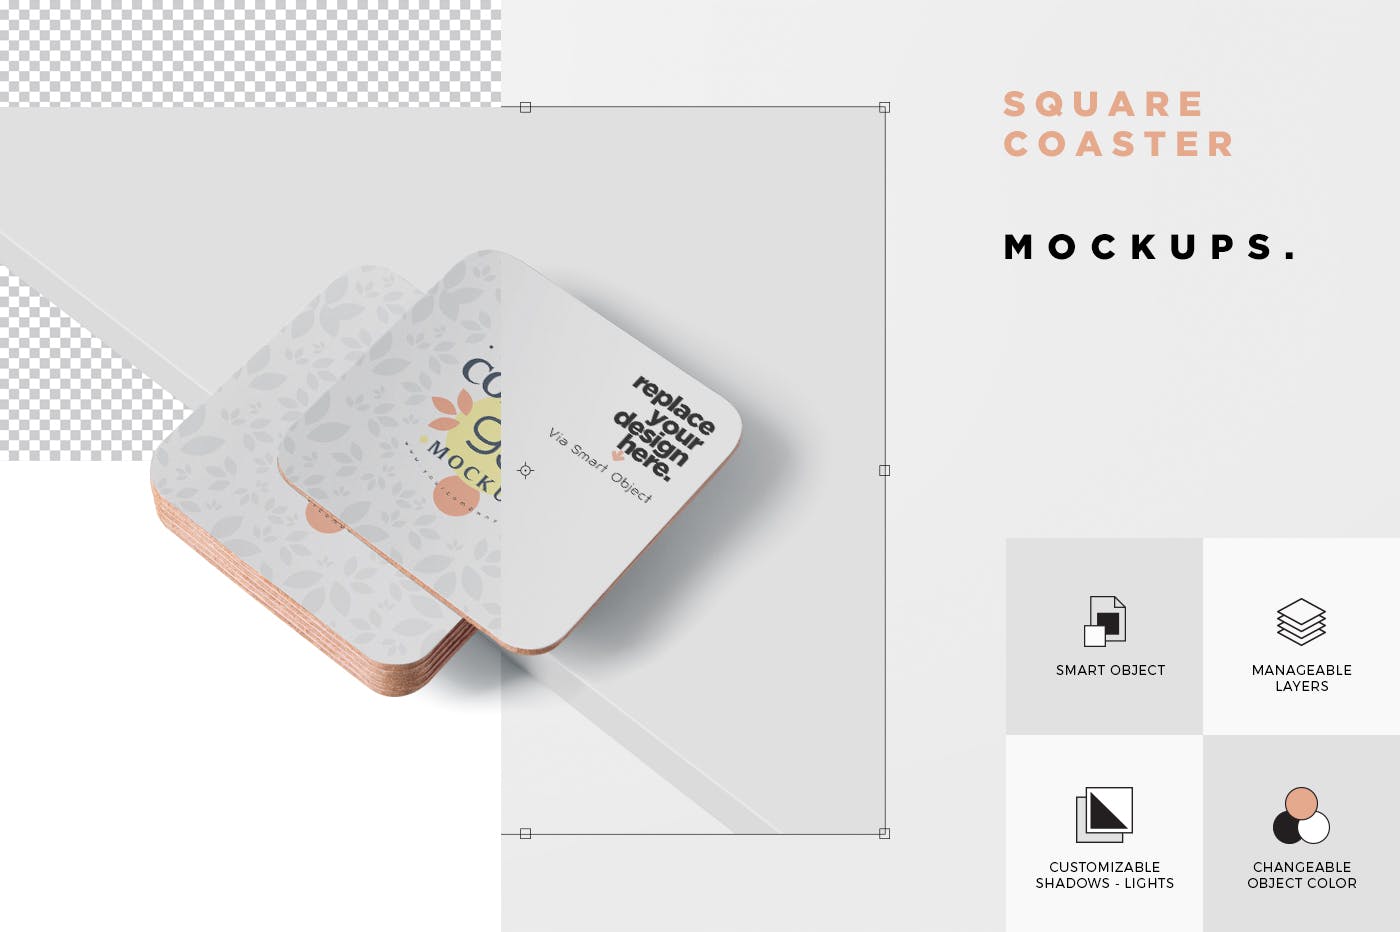 圆角方形杯垫图案设计第一素材精选模板 Square Coaster Mock-Up with Round Corner插图(5)